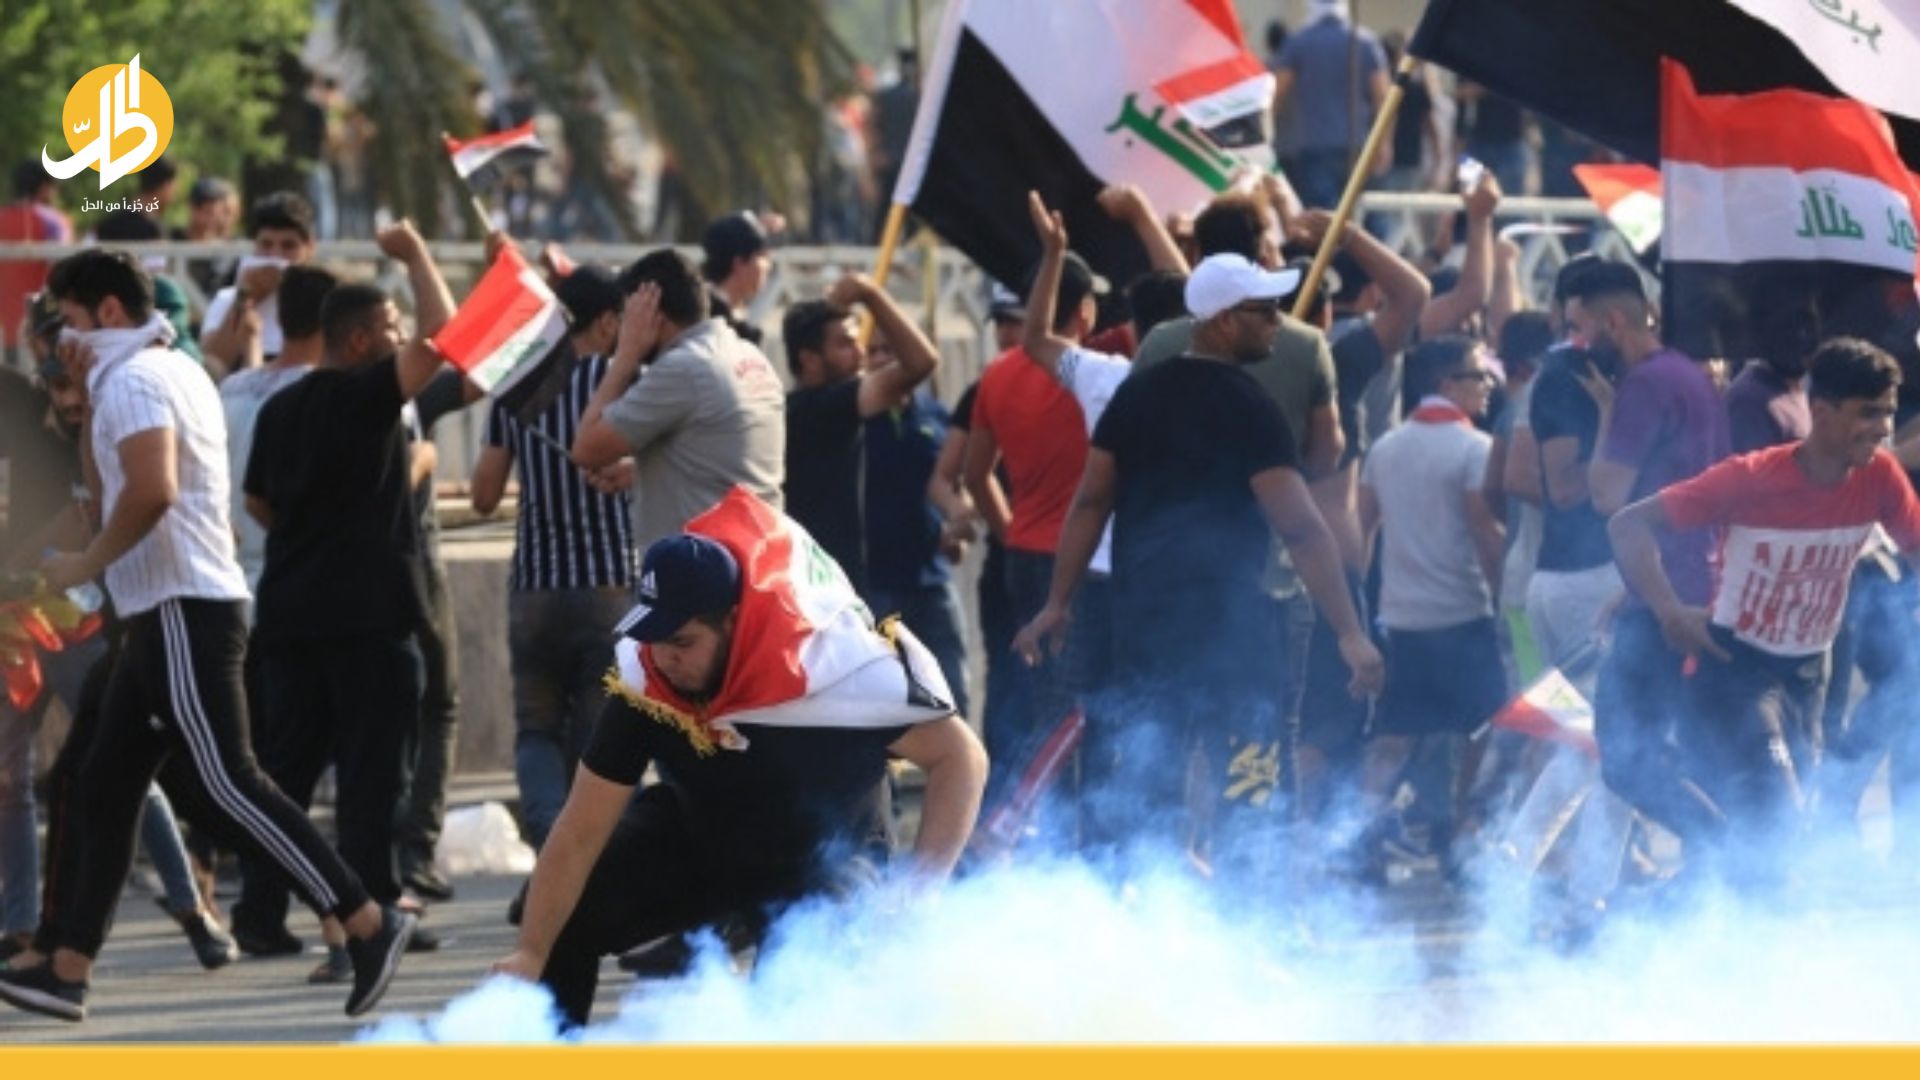 العراق.. “الإطار” يدعو لتظاهرات مضادة و“يونامي” تحذر من التصعيد